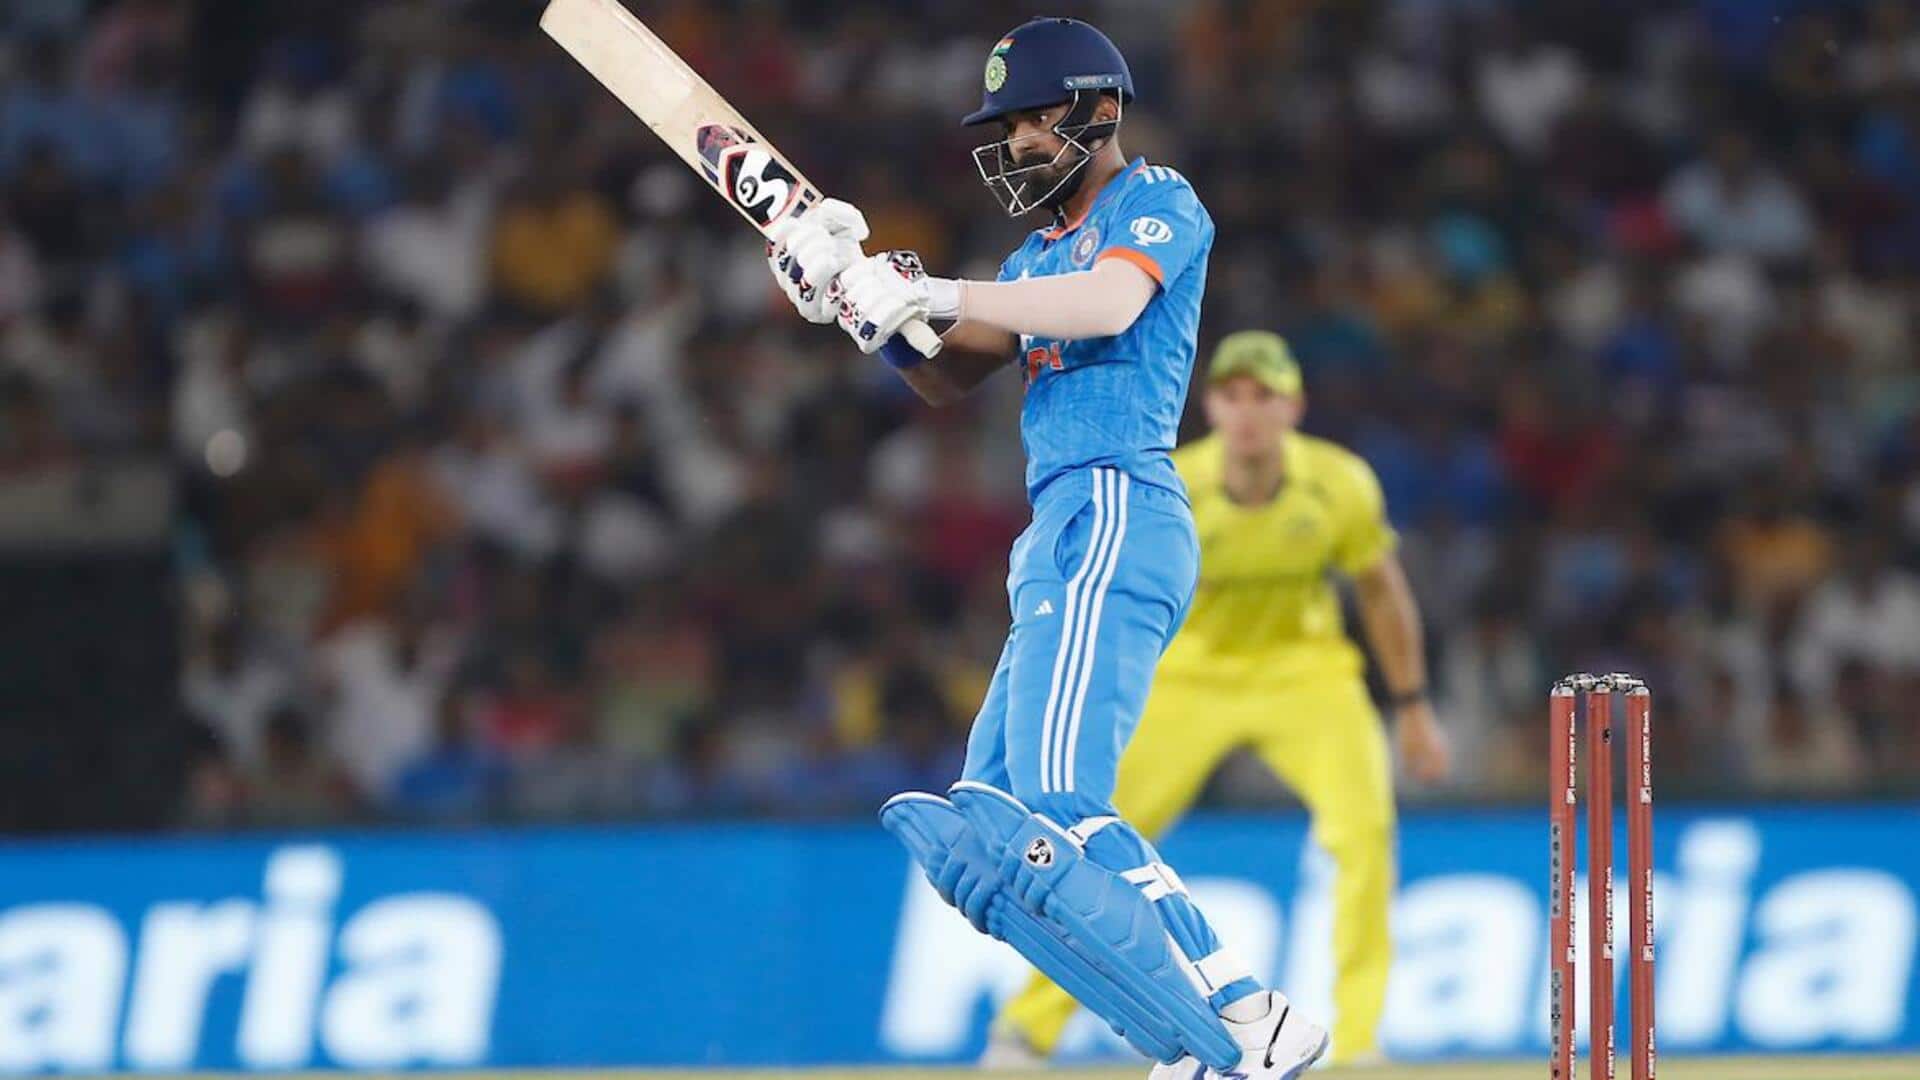 केएल राहुल वनडे की 20 पारियों के बाद दूसरे सर्वाधिक रन बनाने वाले भारतीय विकेटकीपर बने